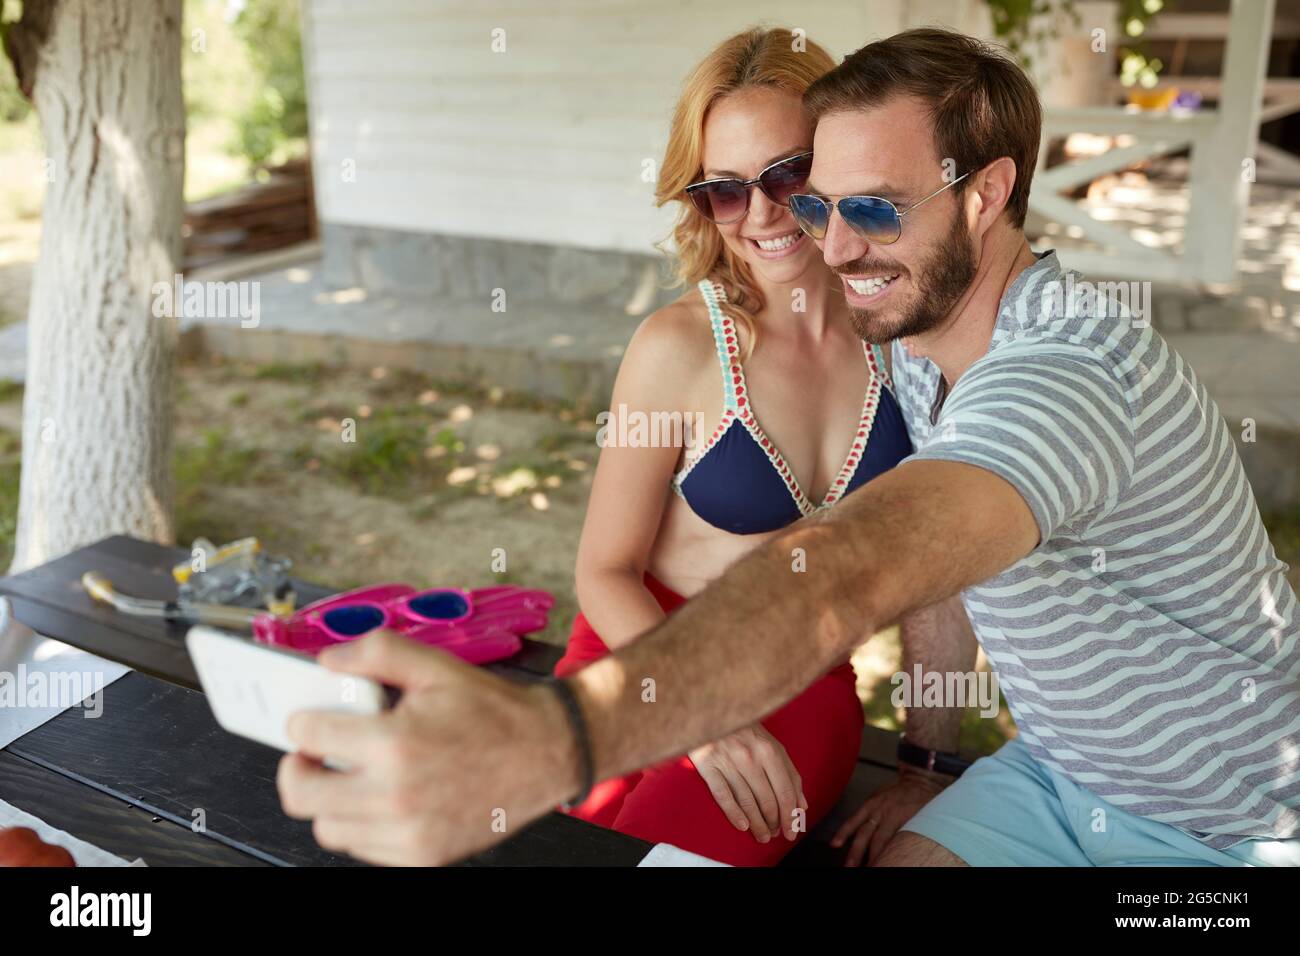 giovane coppia adulta caucasica che prende selfie, seduto su una panchina nel cortile, sorridente Foto Stock